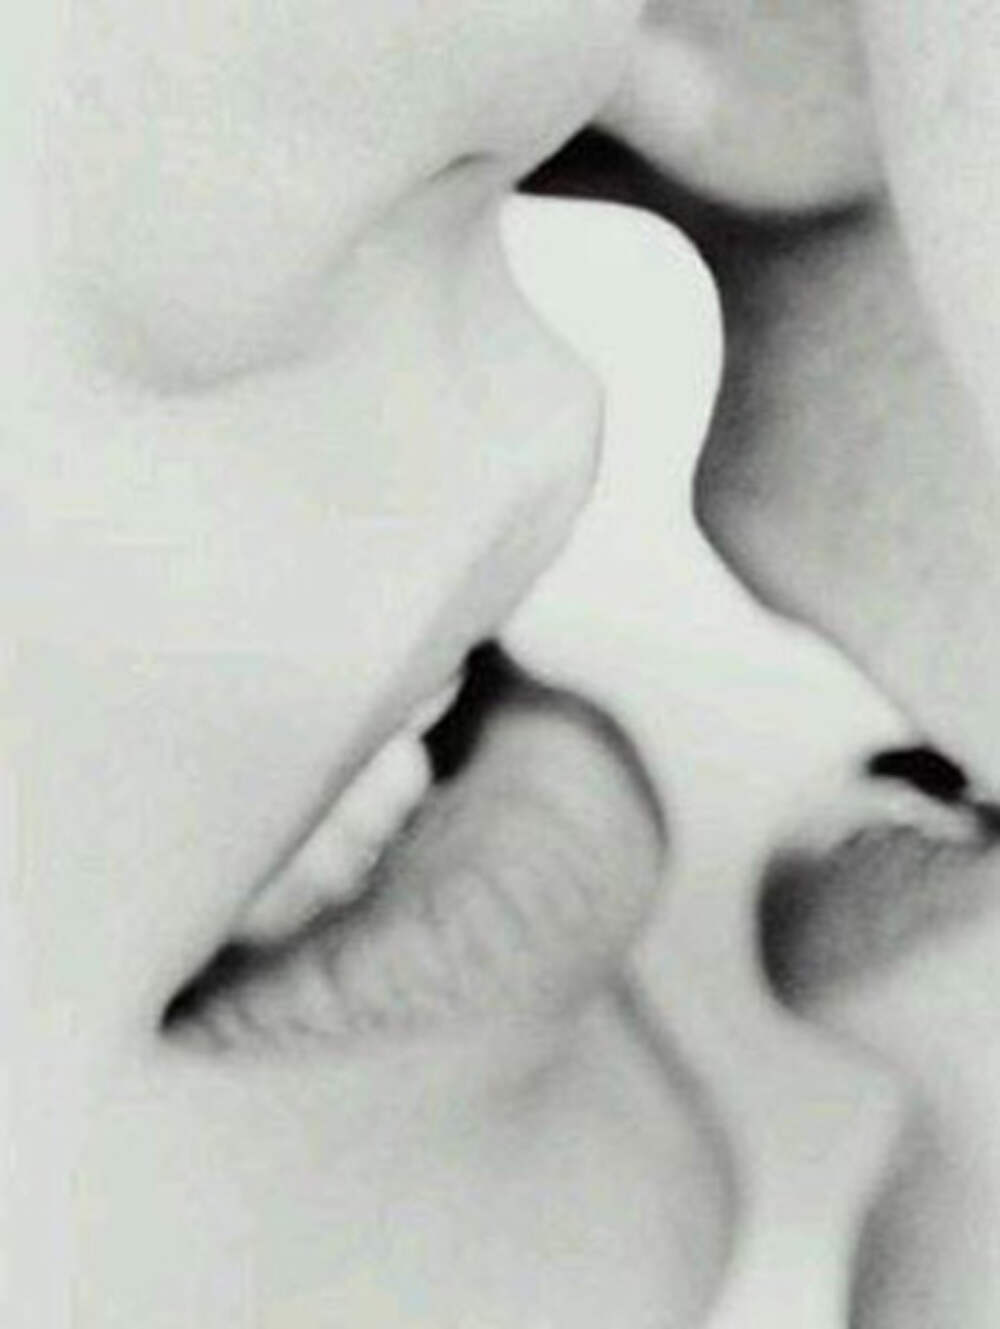 Двое губ в поцелуе